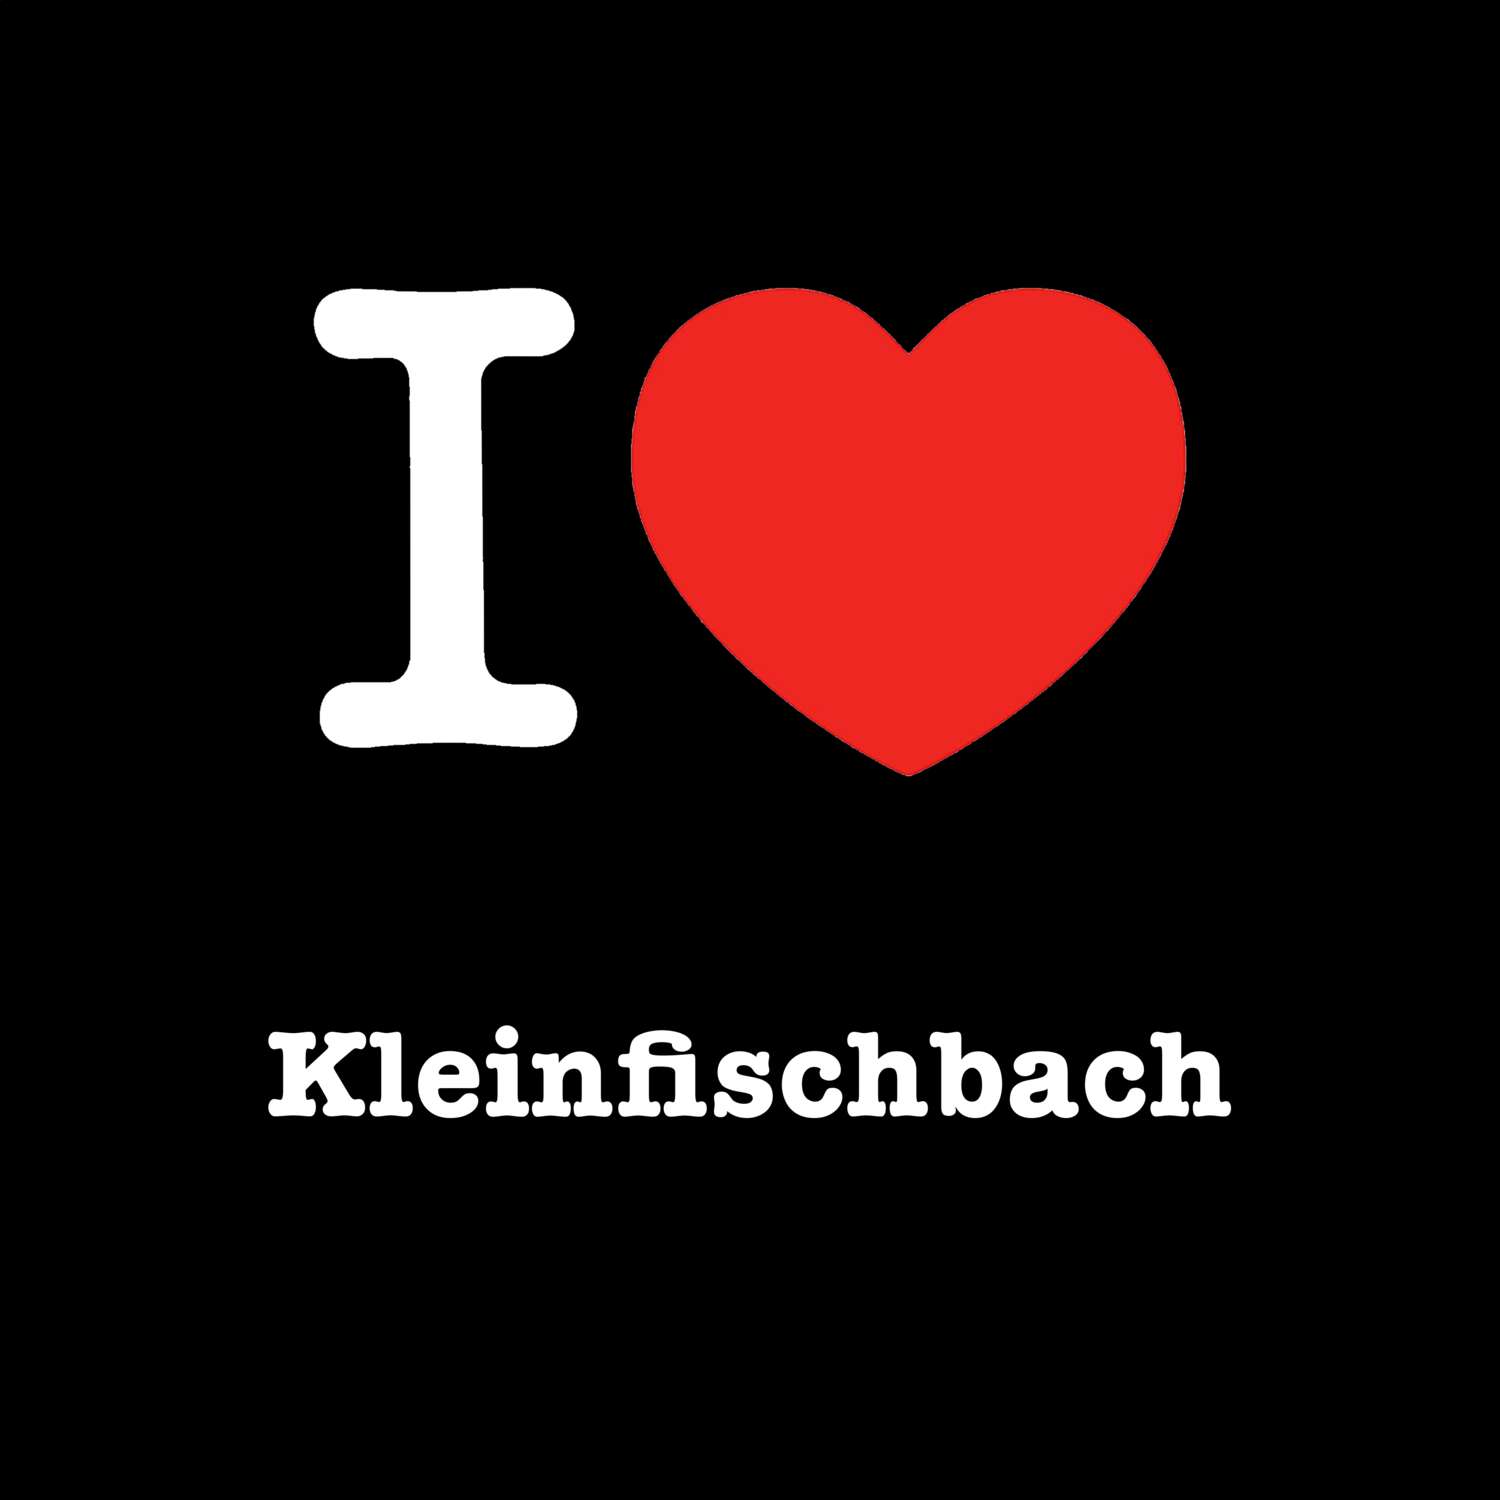 Kleinfischbach T-Shirt »I love«